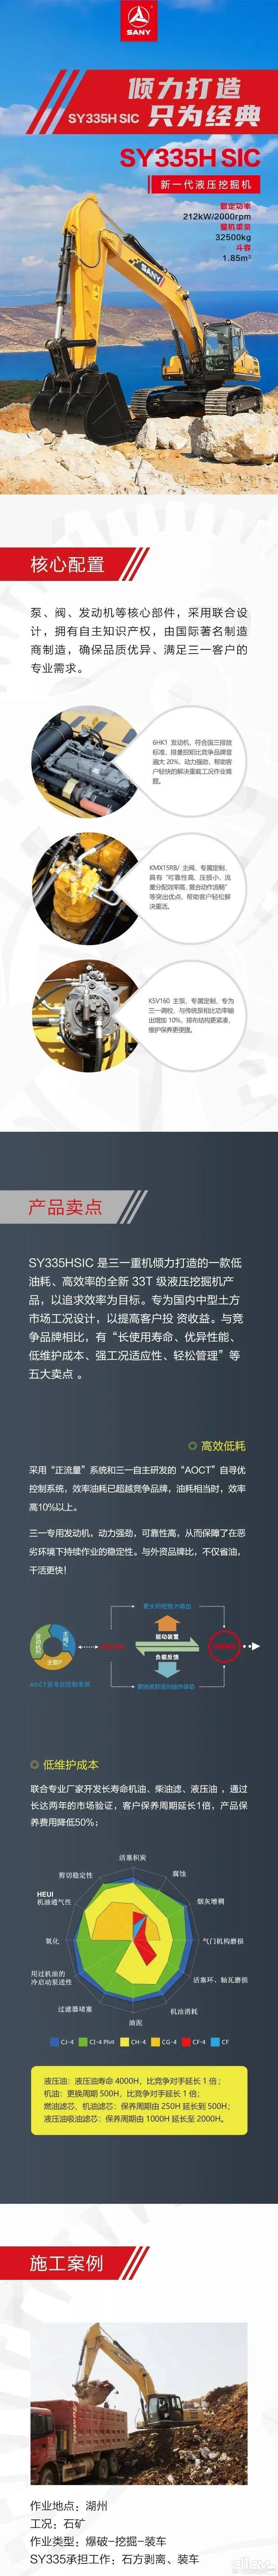 三一SY335HSIC挖掘机产品性能介绍